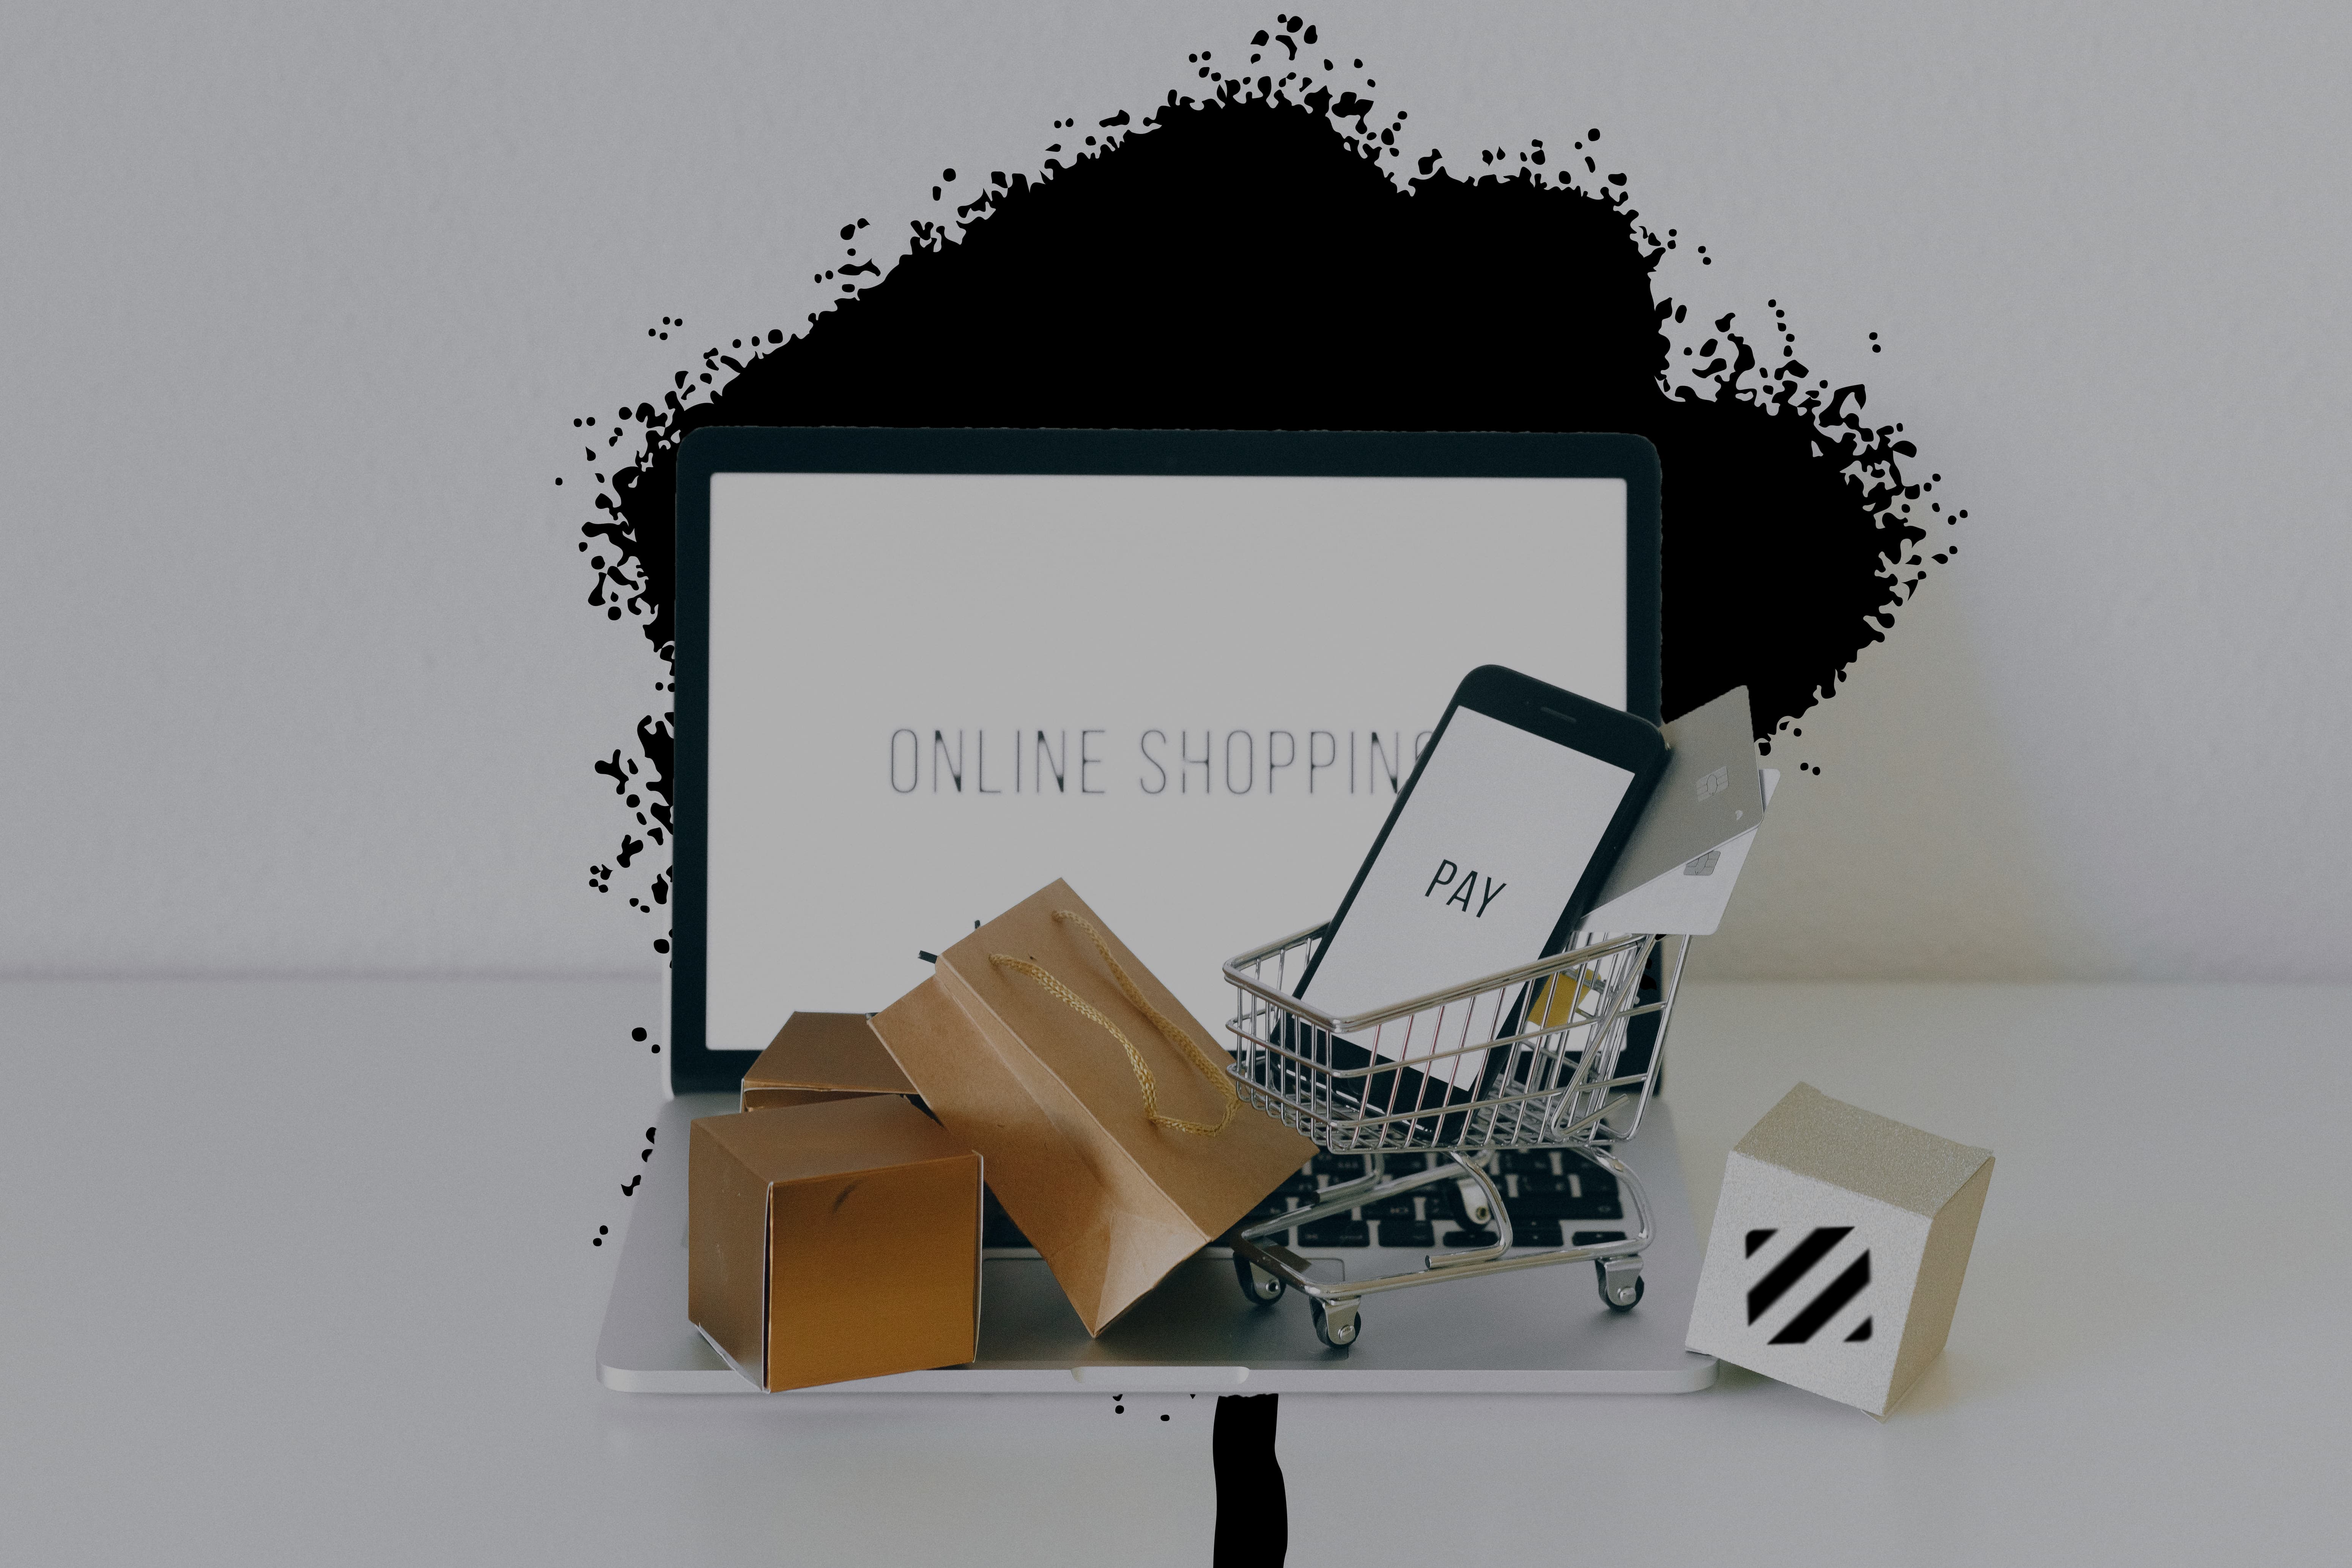  Alışveriş kutuları, alışveriş sepeti ve online alışveriş göstergesi. 